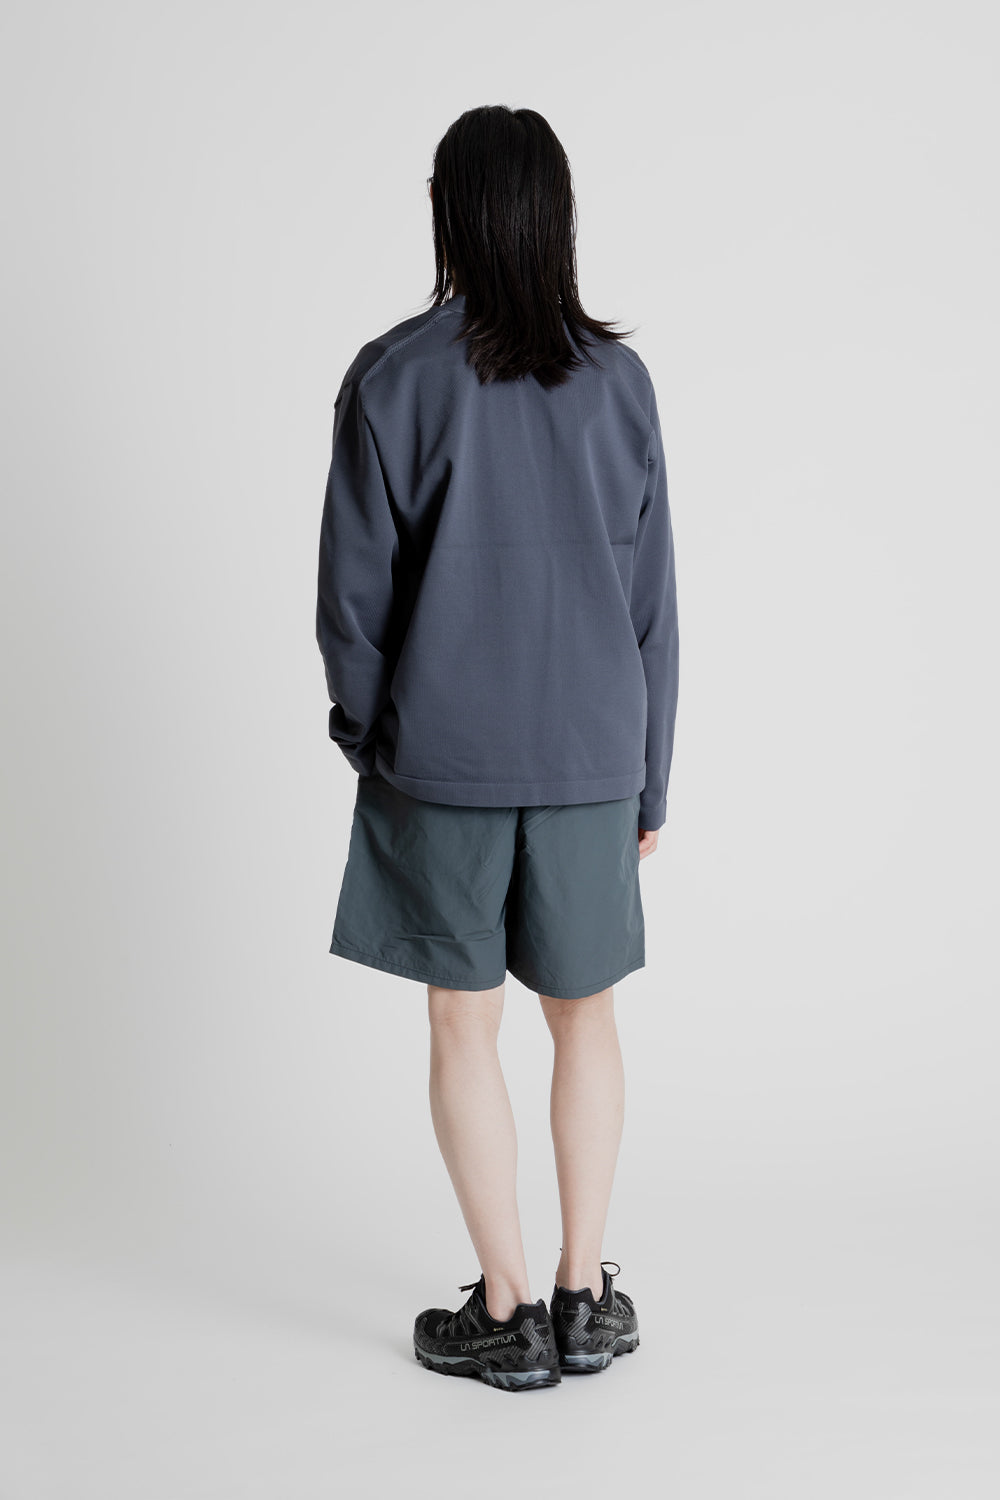 Goldwin Nylon Shorts 7 Inch in Dark Charcoal